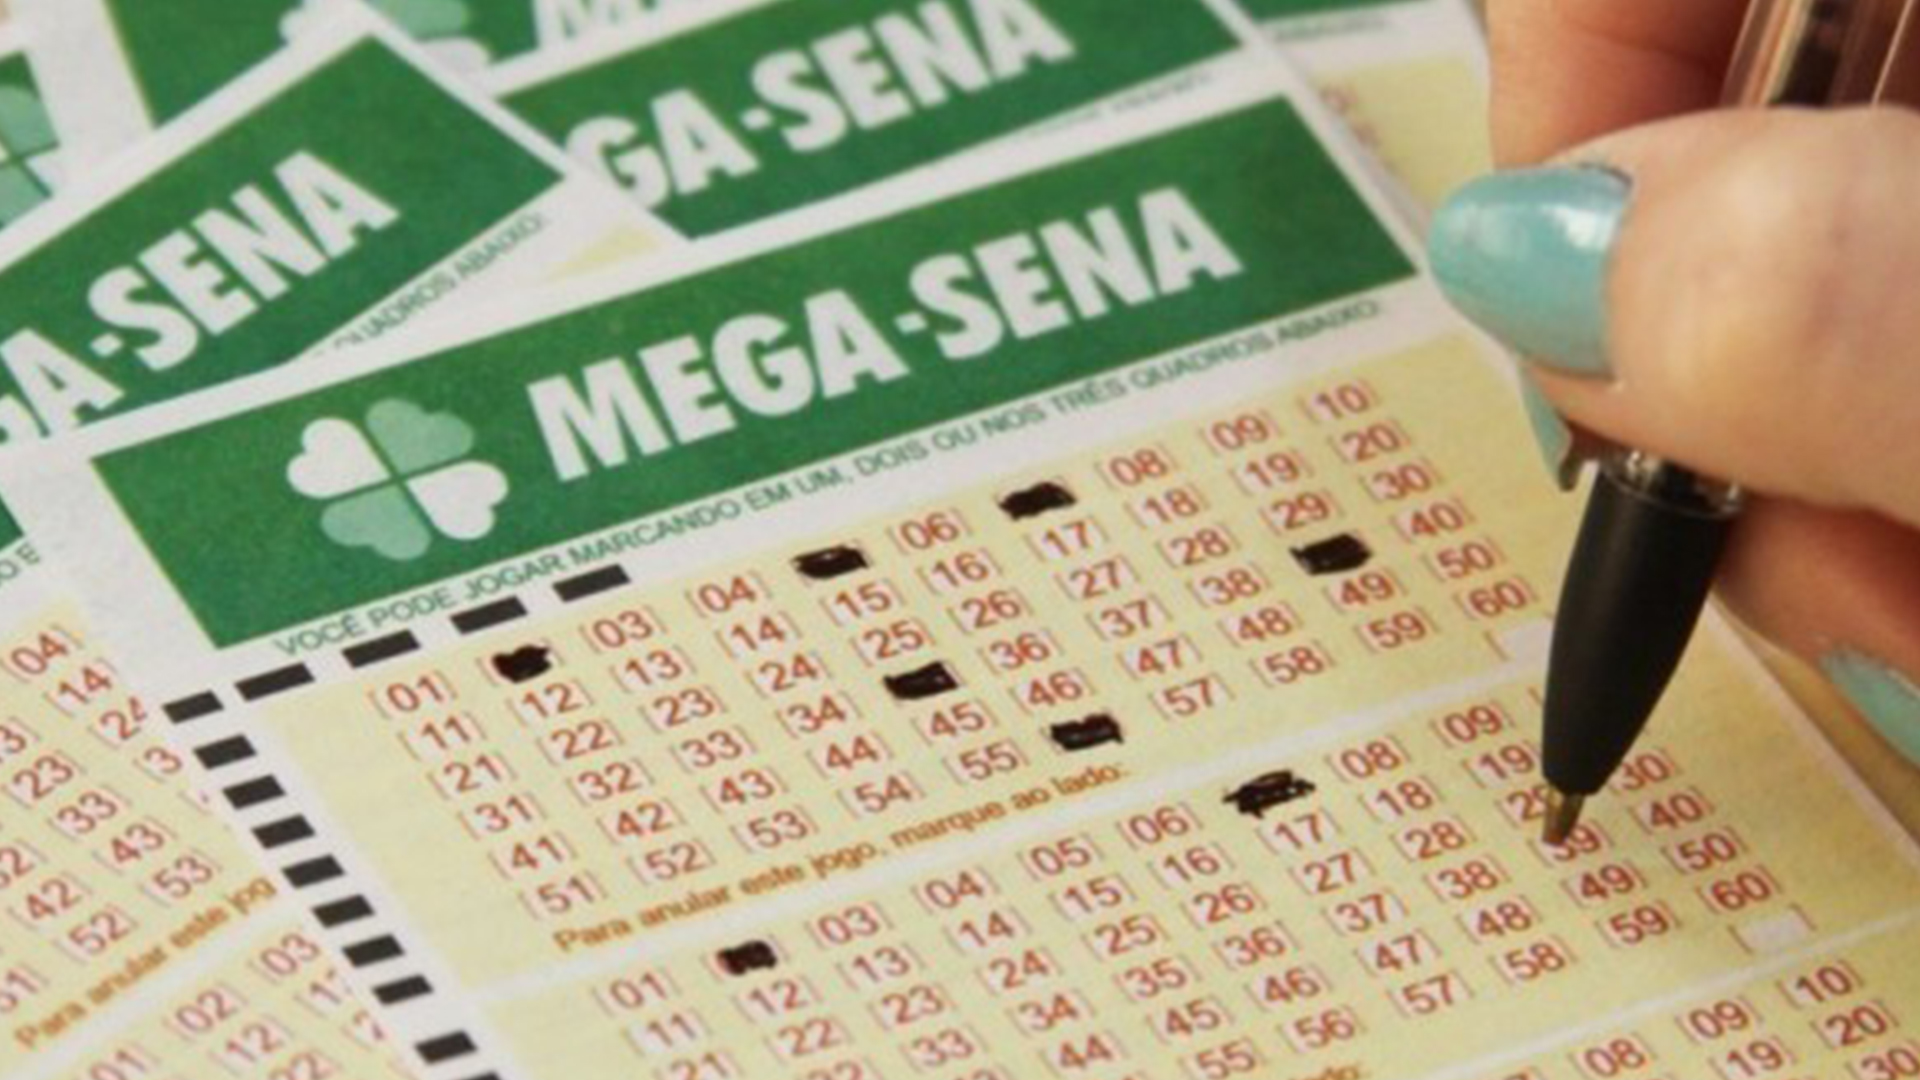 A aposta mínima custa R$3,50 e pode ser feita em qualquer lotérica do país